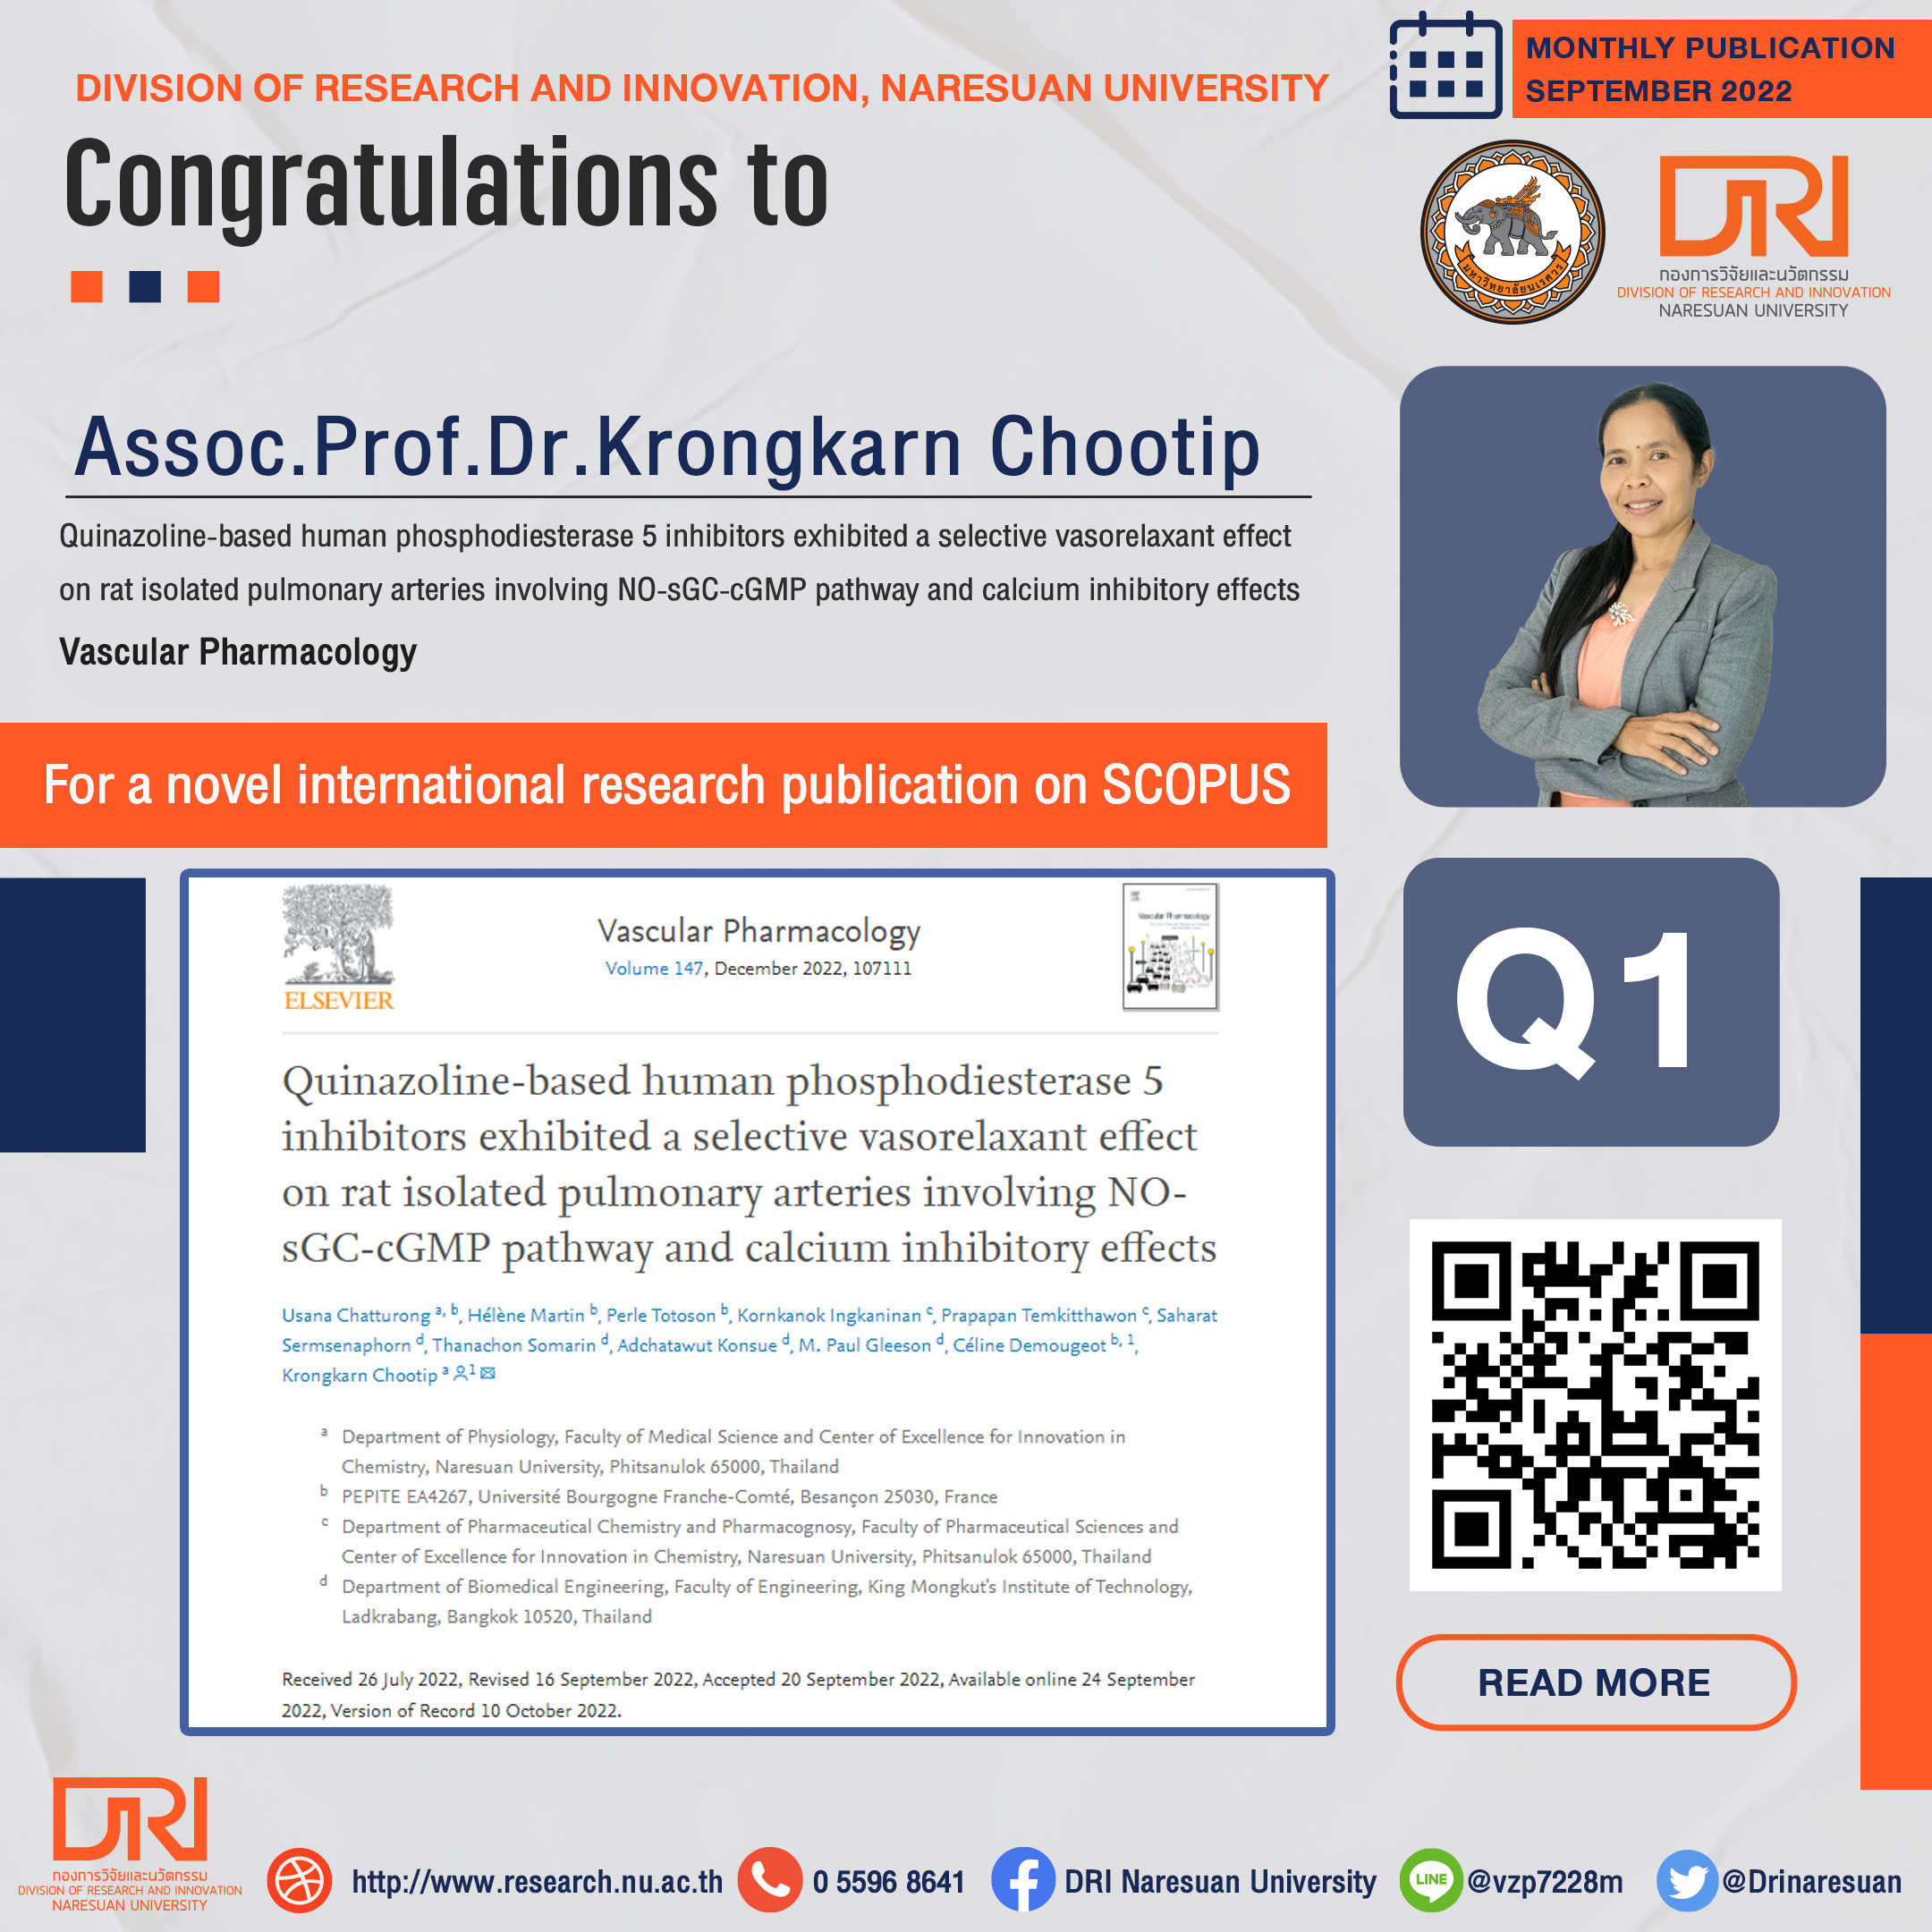 Congratulations to Assoc.Prof.Dr.Krongkarn Chootip